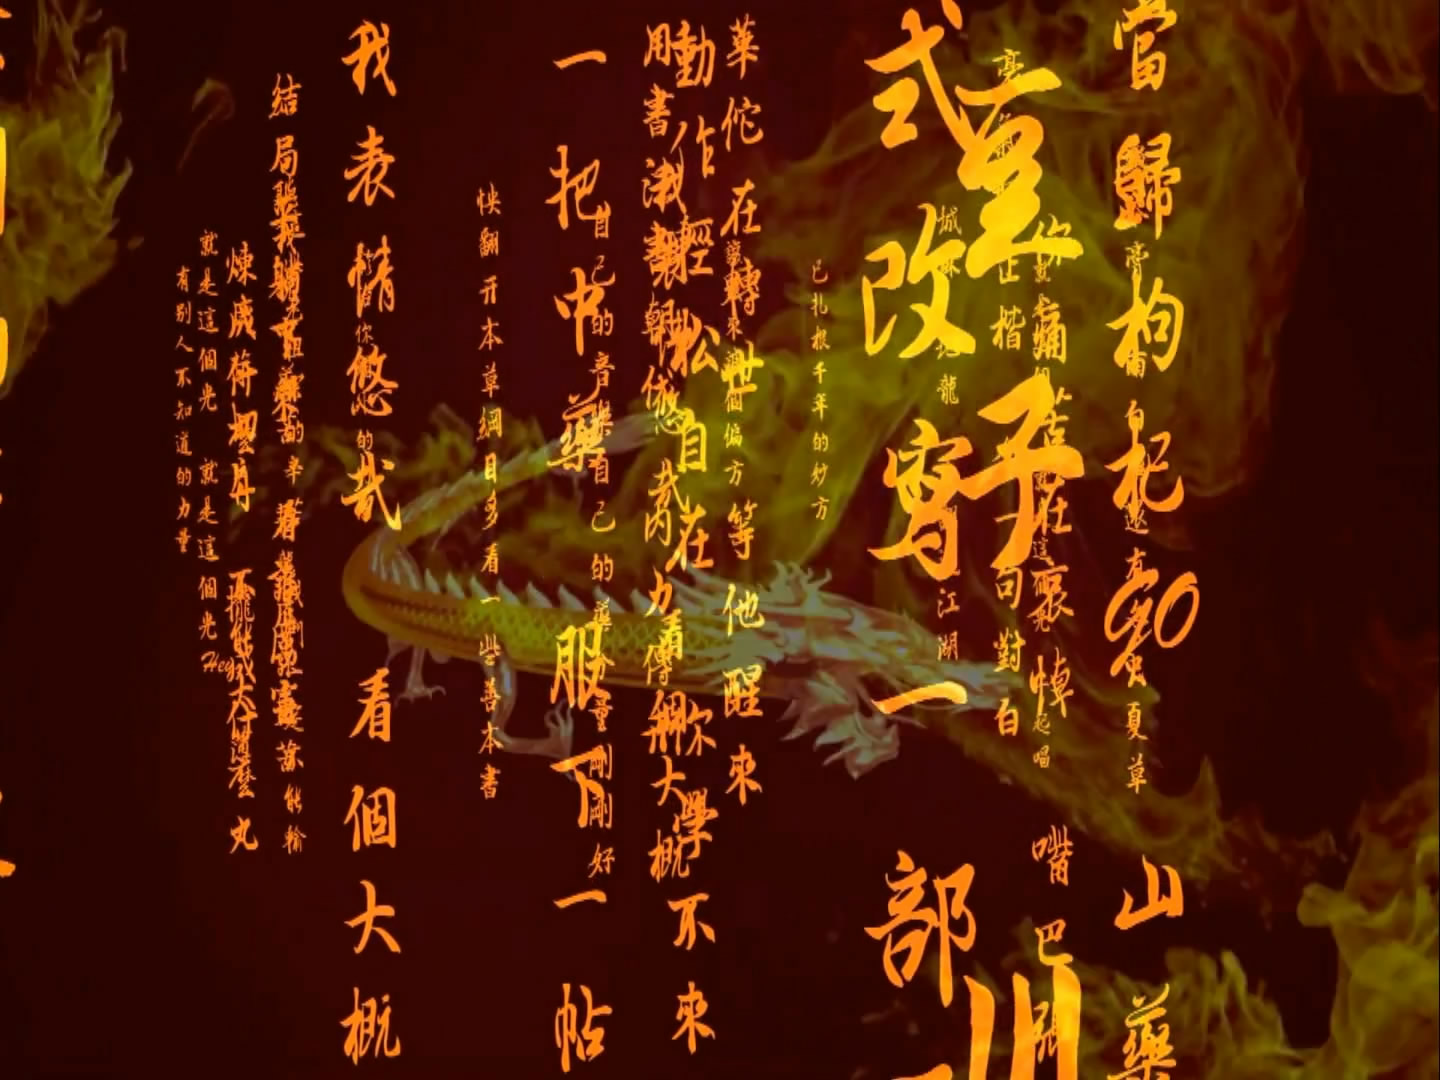 金龙飞舞图腾古文字 中国风书法剑术武术晚会led背景视频素材